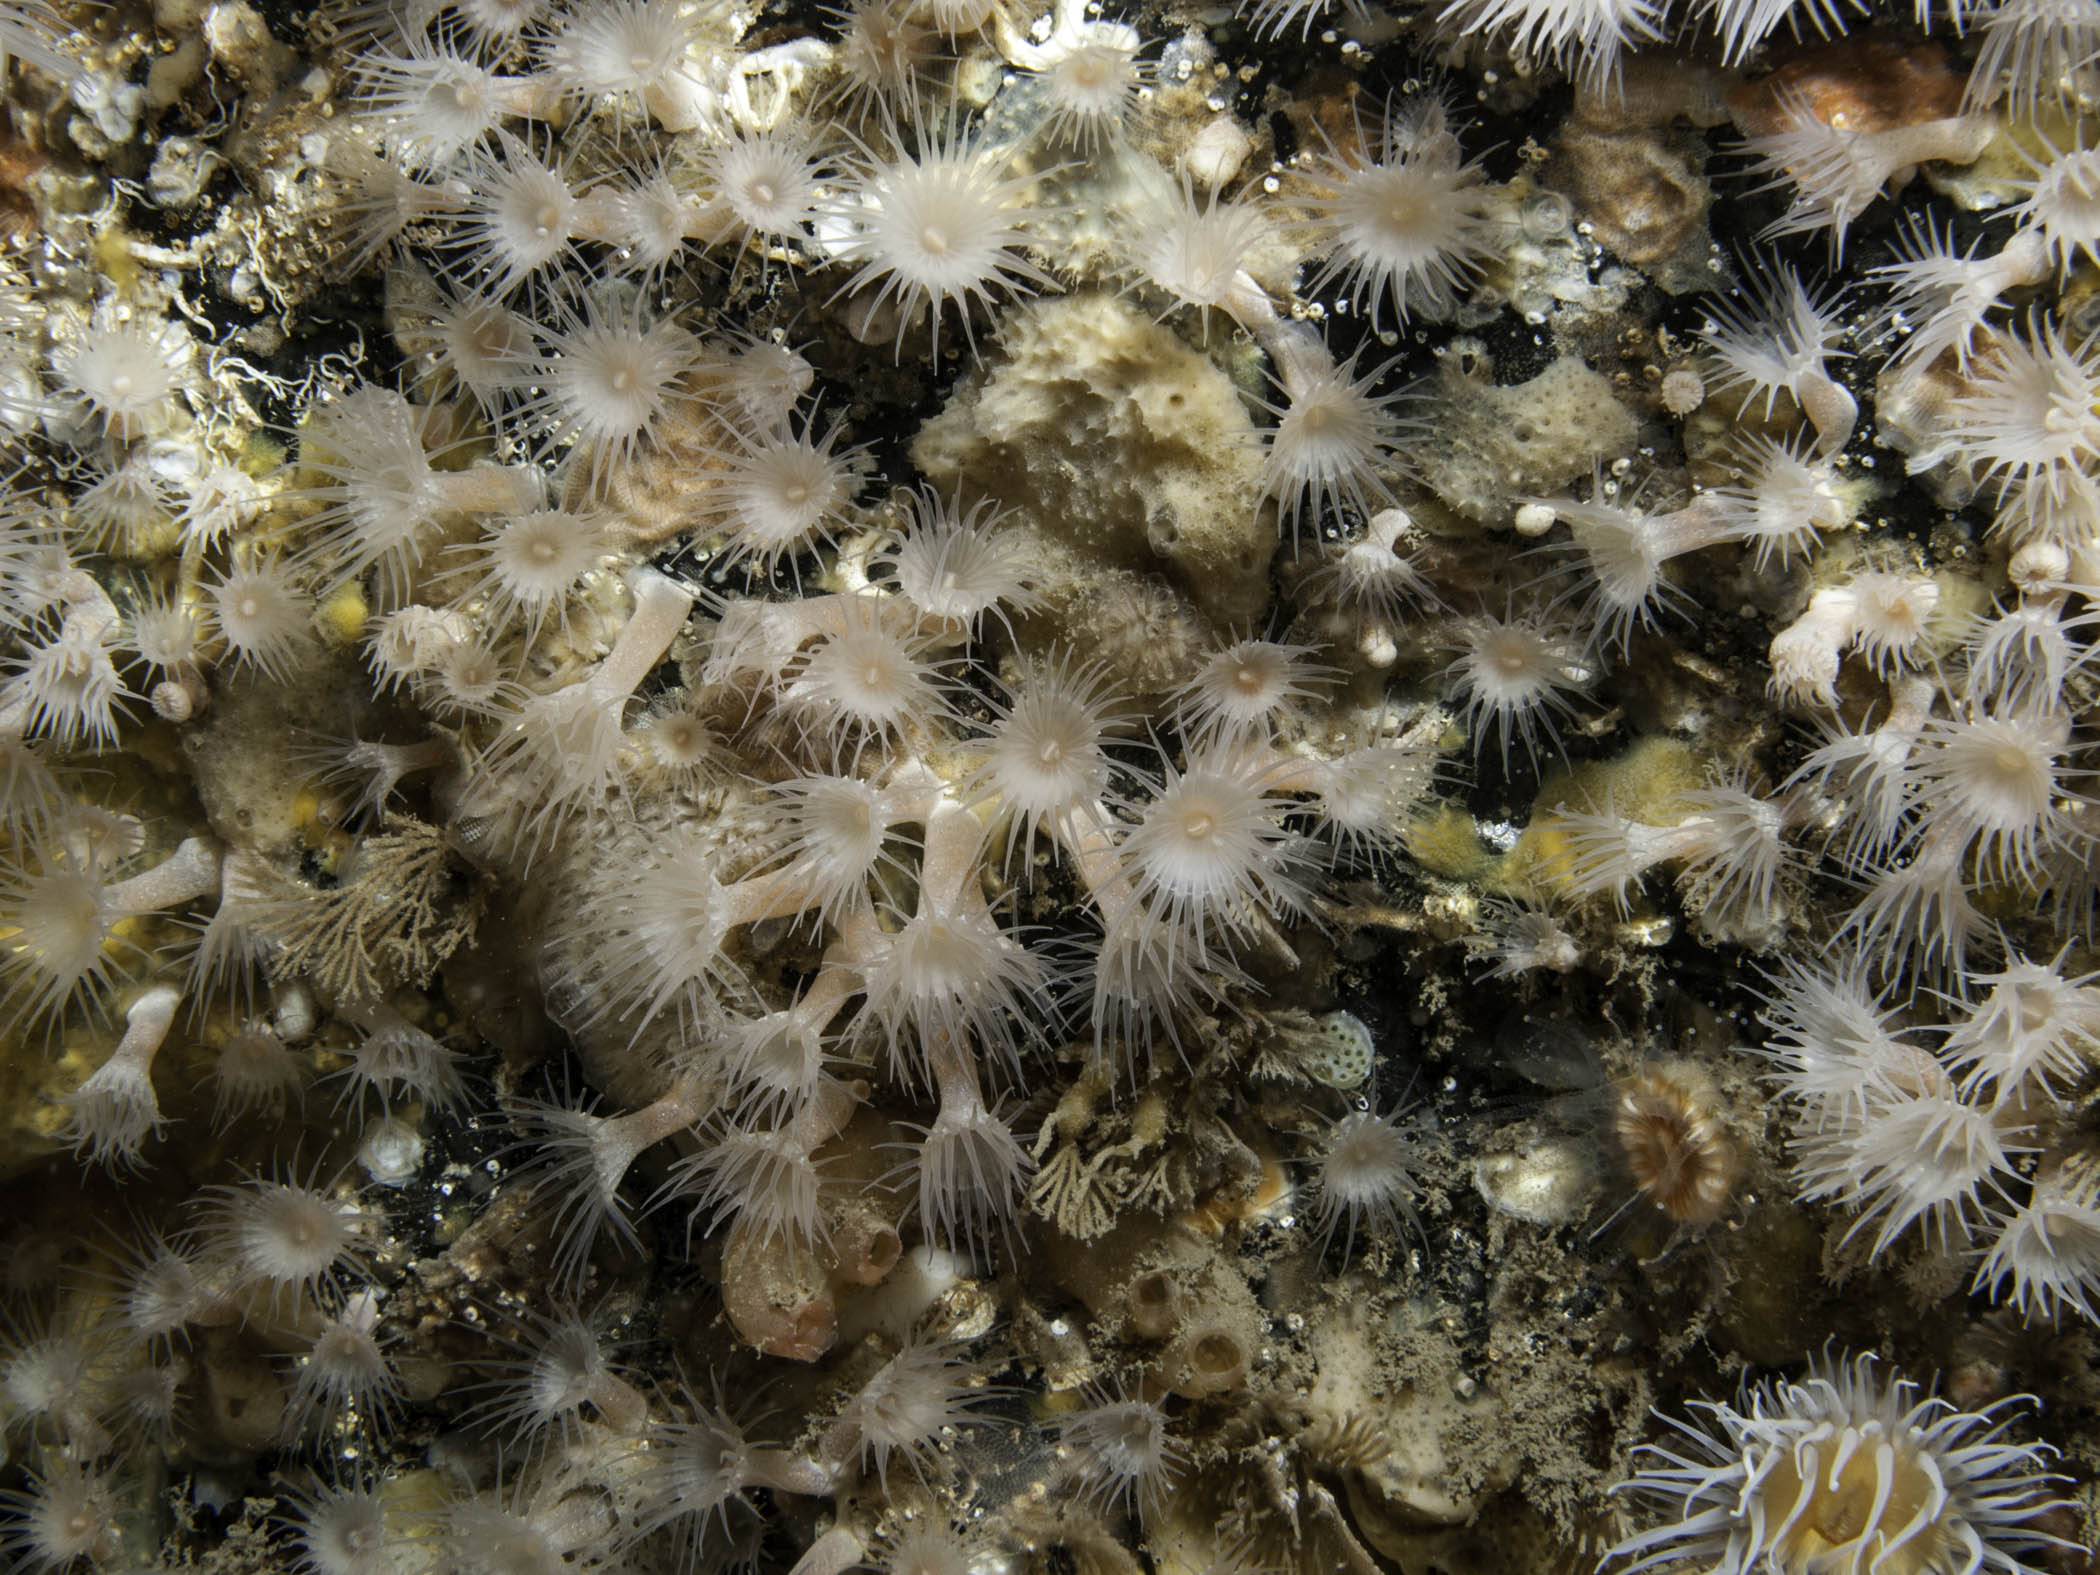 image: Parazoanthus anguicomus. Rathlin Island, 2009.